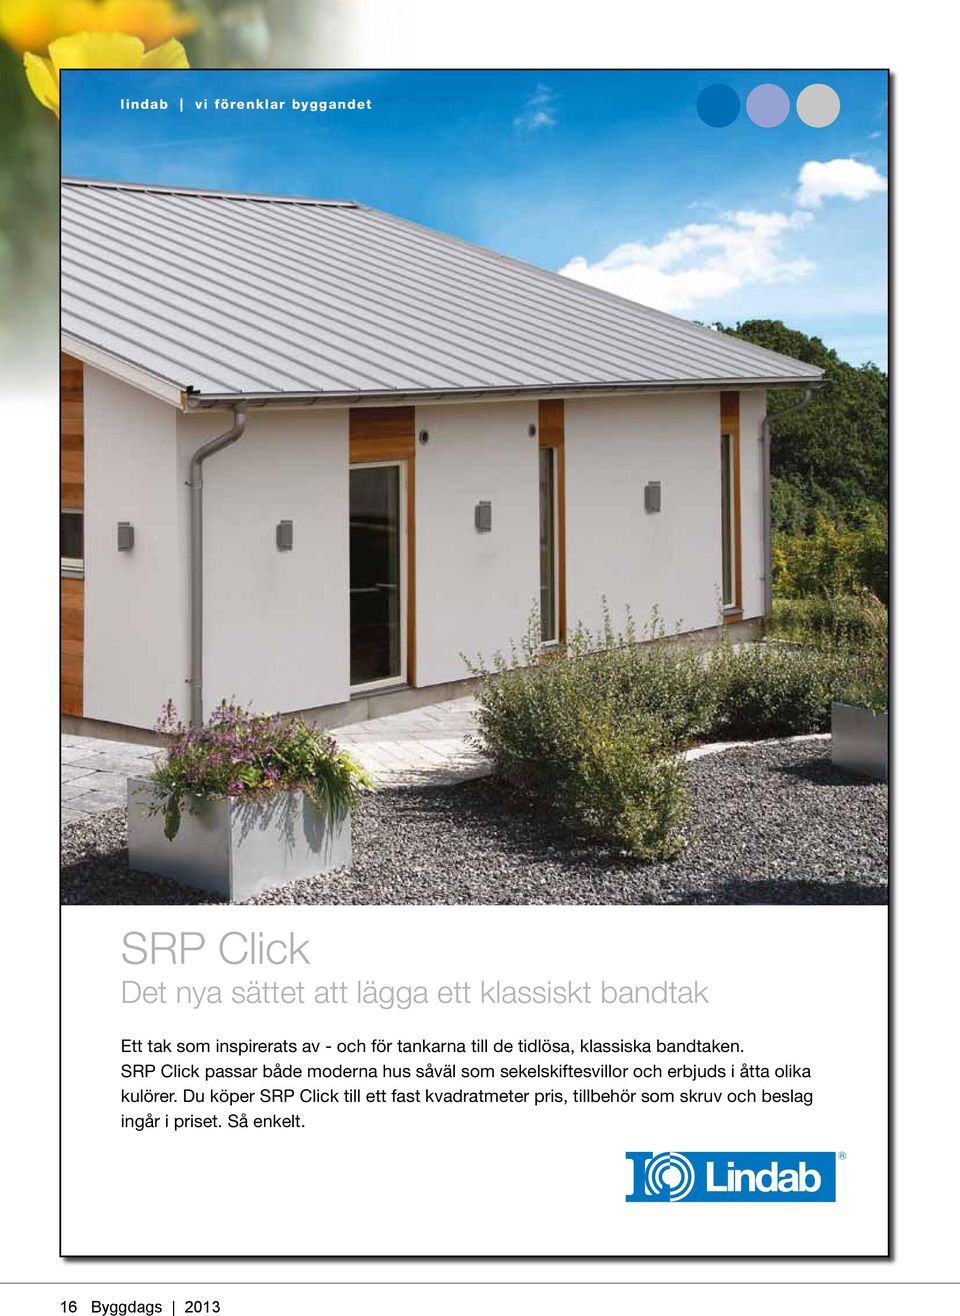 SRP Click passar både moderna hus såväl som sekelskiftesvillor och erbjuds i åtta olika kulörer.